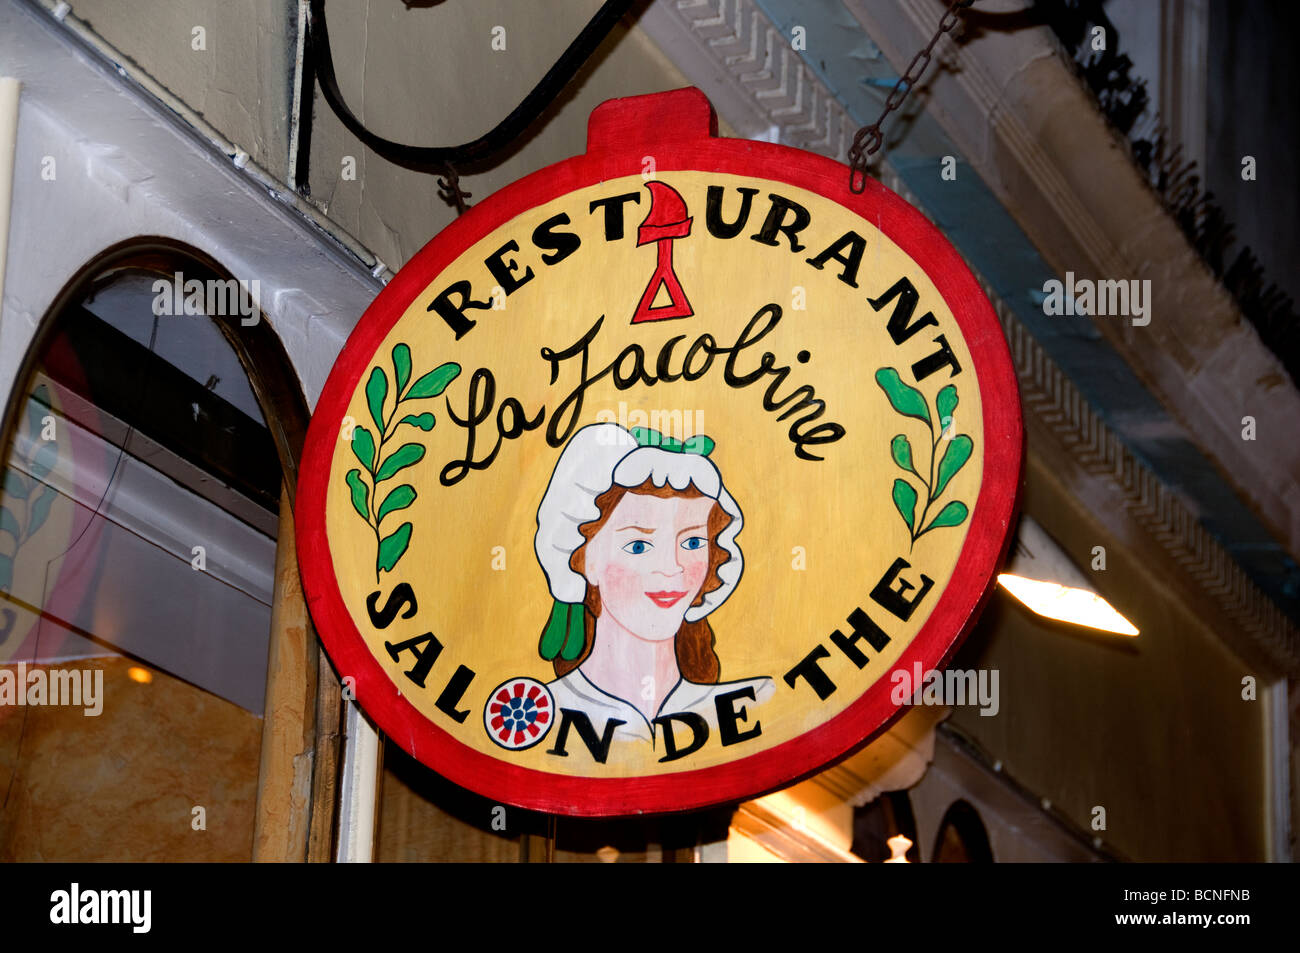 Restaurant Salon de The Paris France French Stock Photo